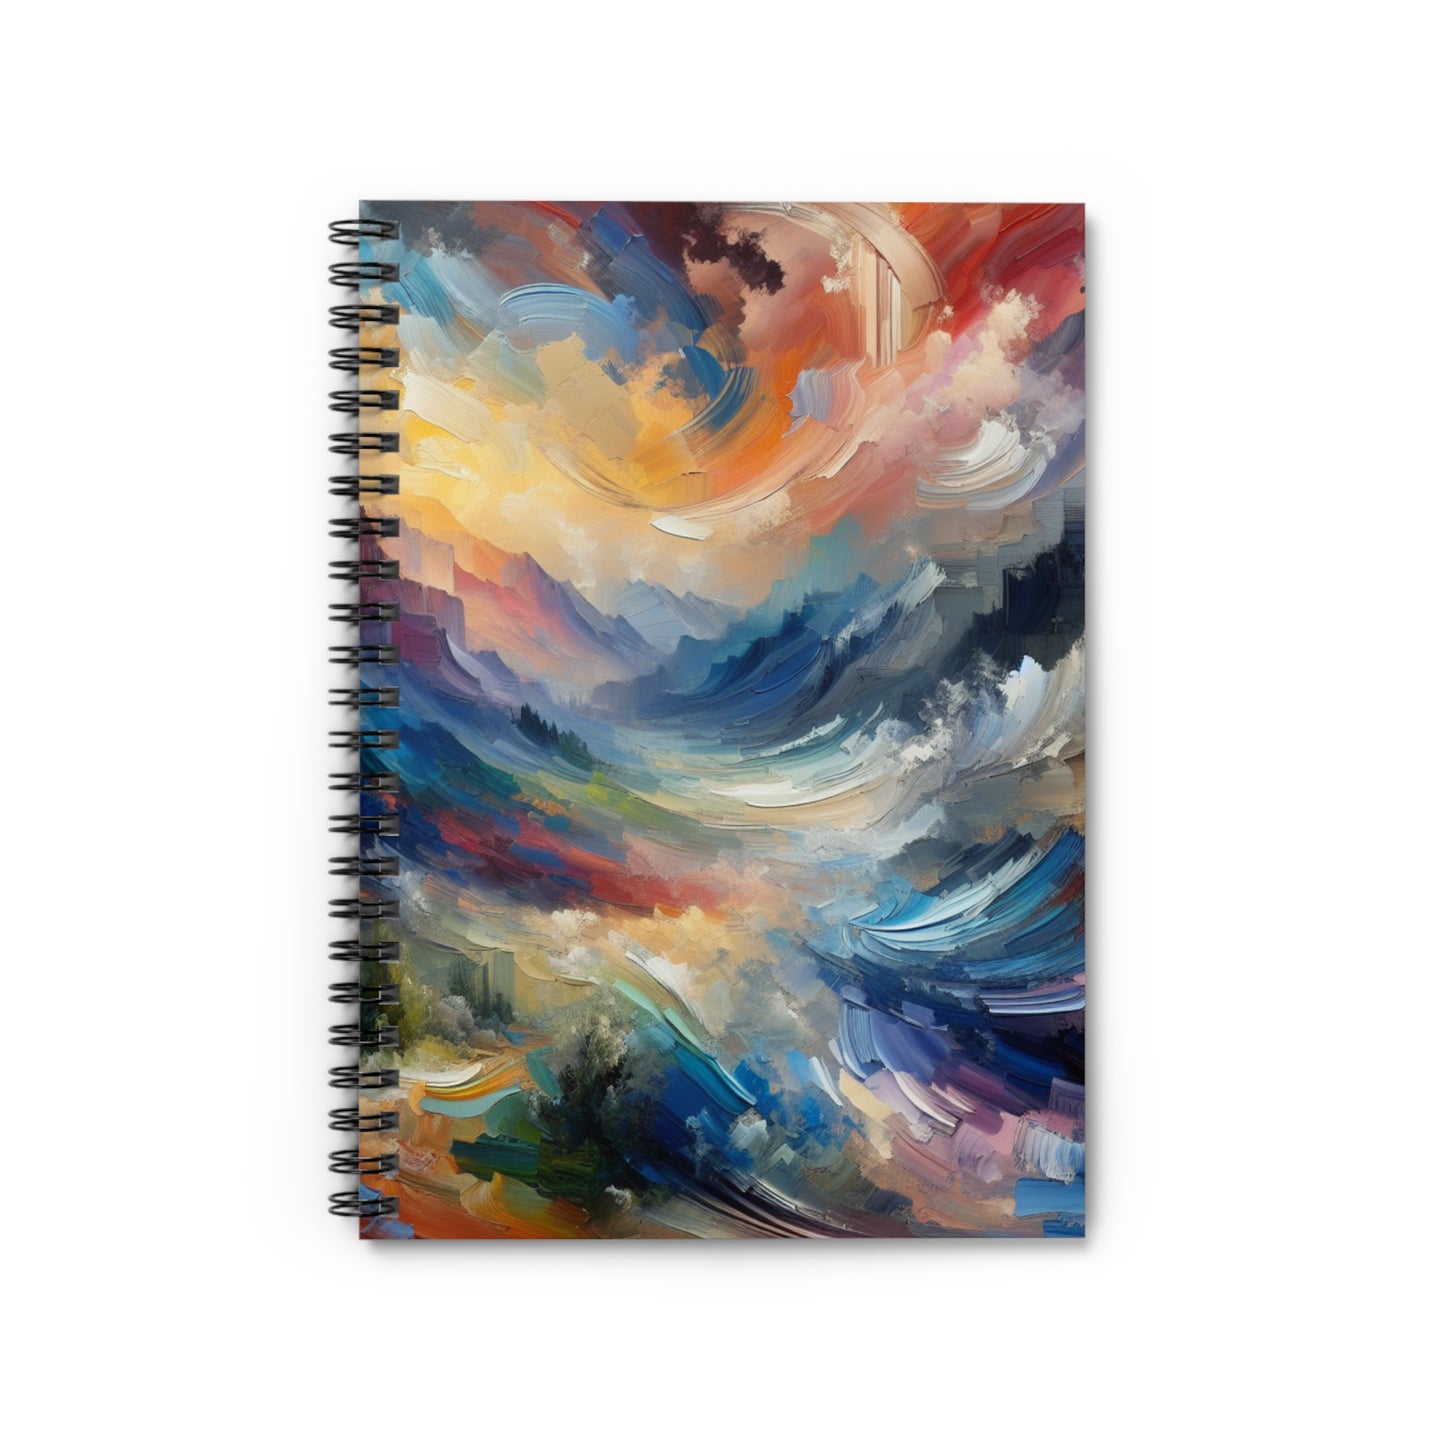 "Paysage abstrait : explorer les profondeurs émotionnelles à travers la couleur et la texture" - The Alien Spiral Notebook (Lined Line) Style expressionnisme abstrait